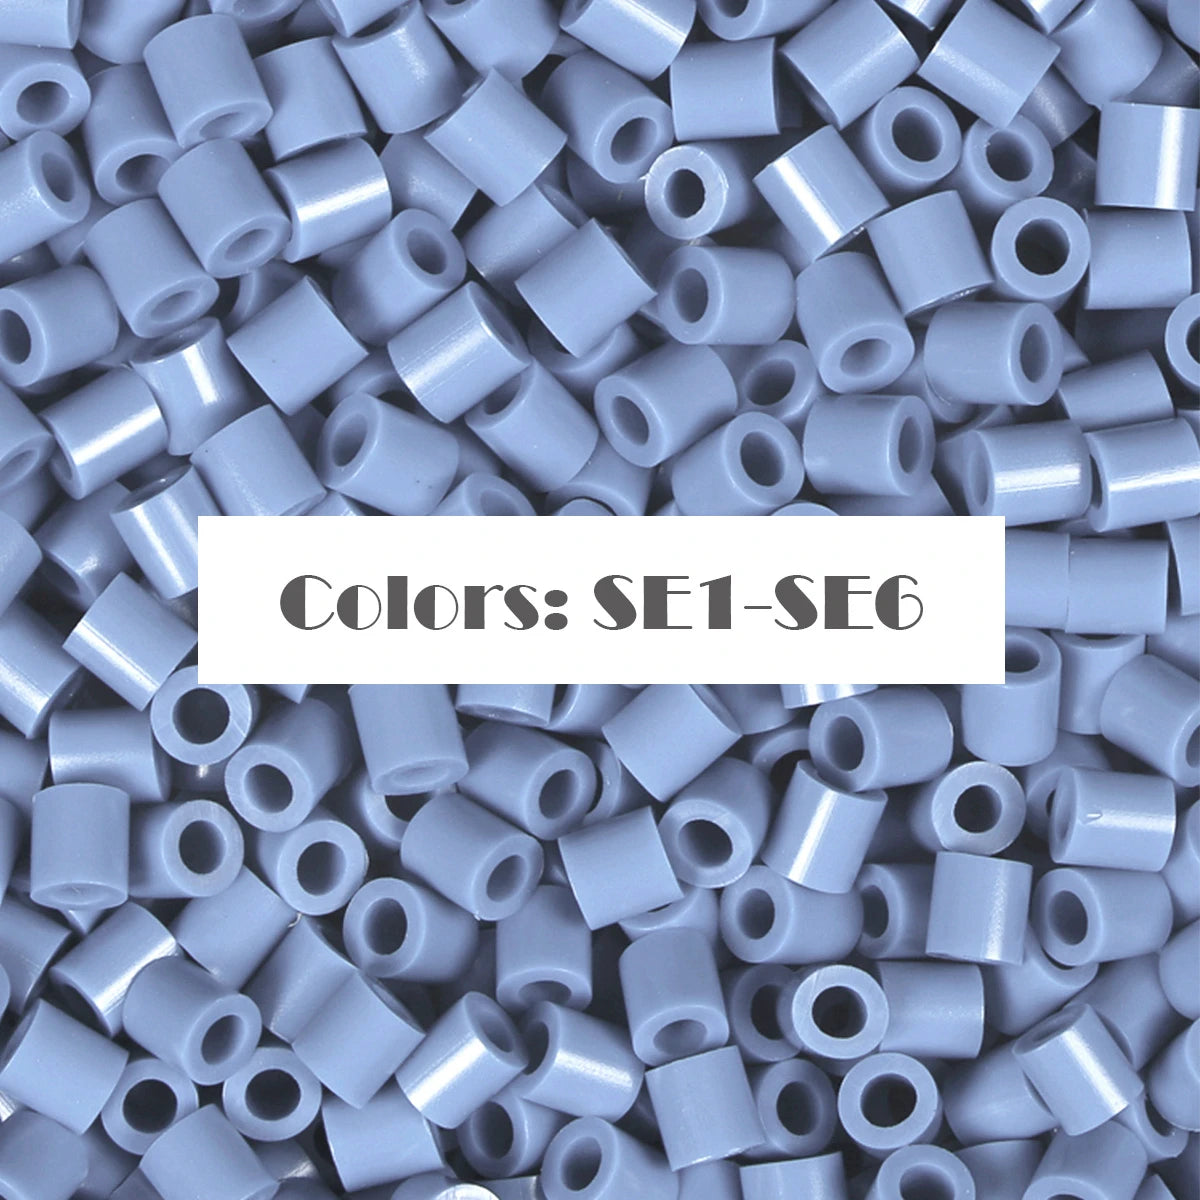 (SE1-SE6) Новая серия цветов Blue S-1KG оптом